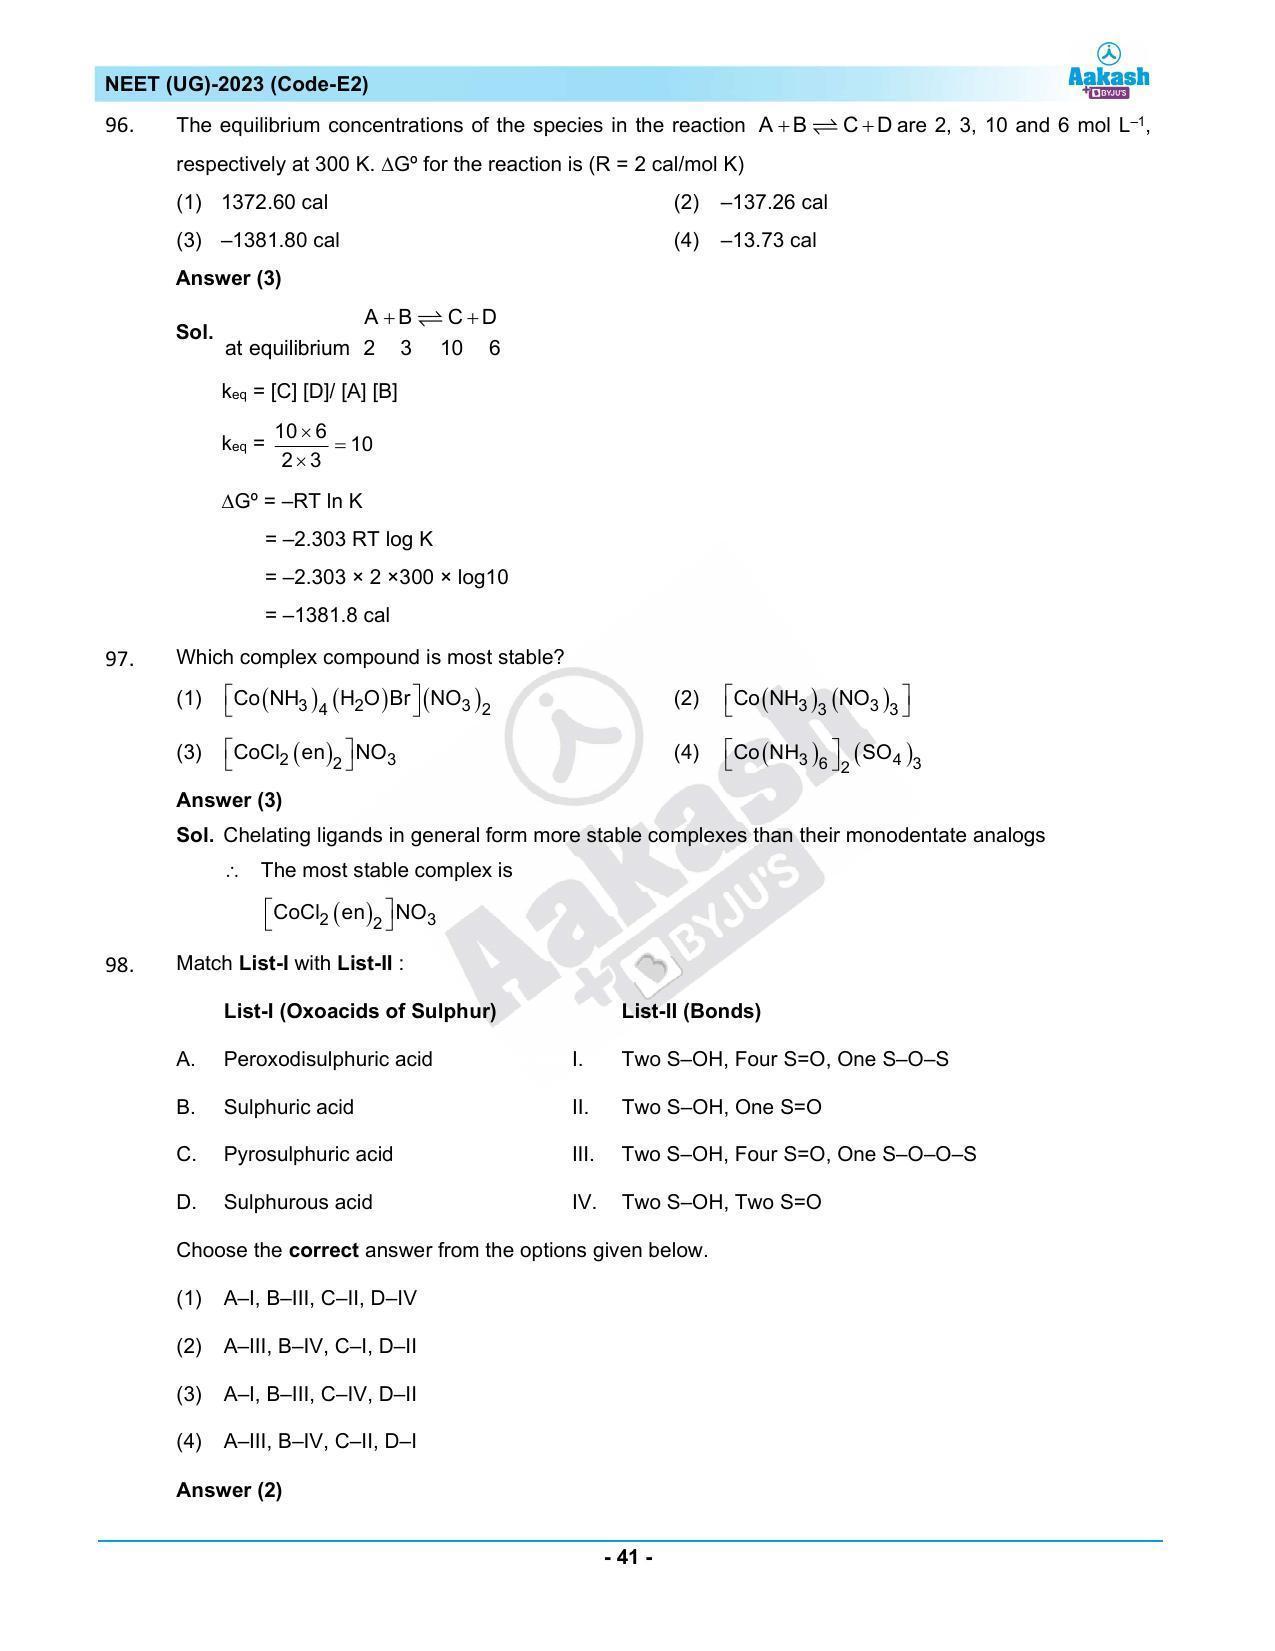 NEET 2023 Question Paper E2 - Page 41